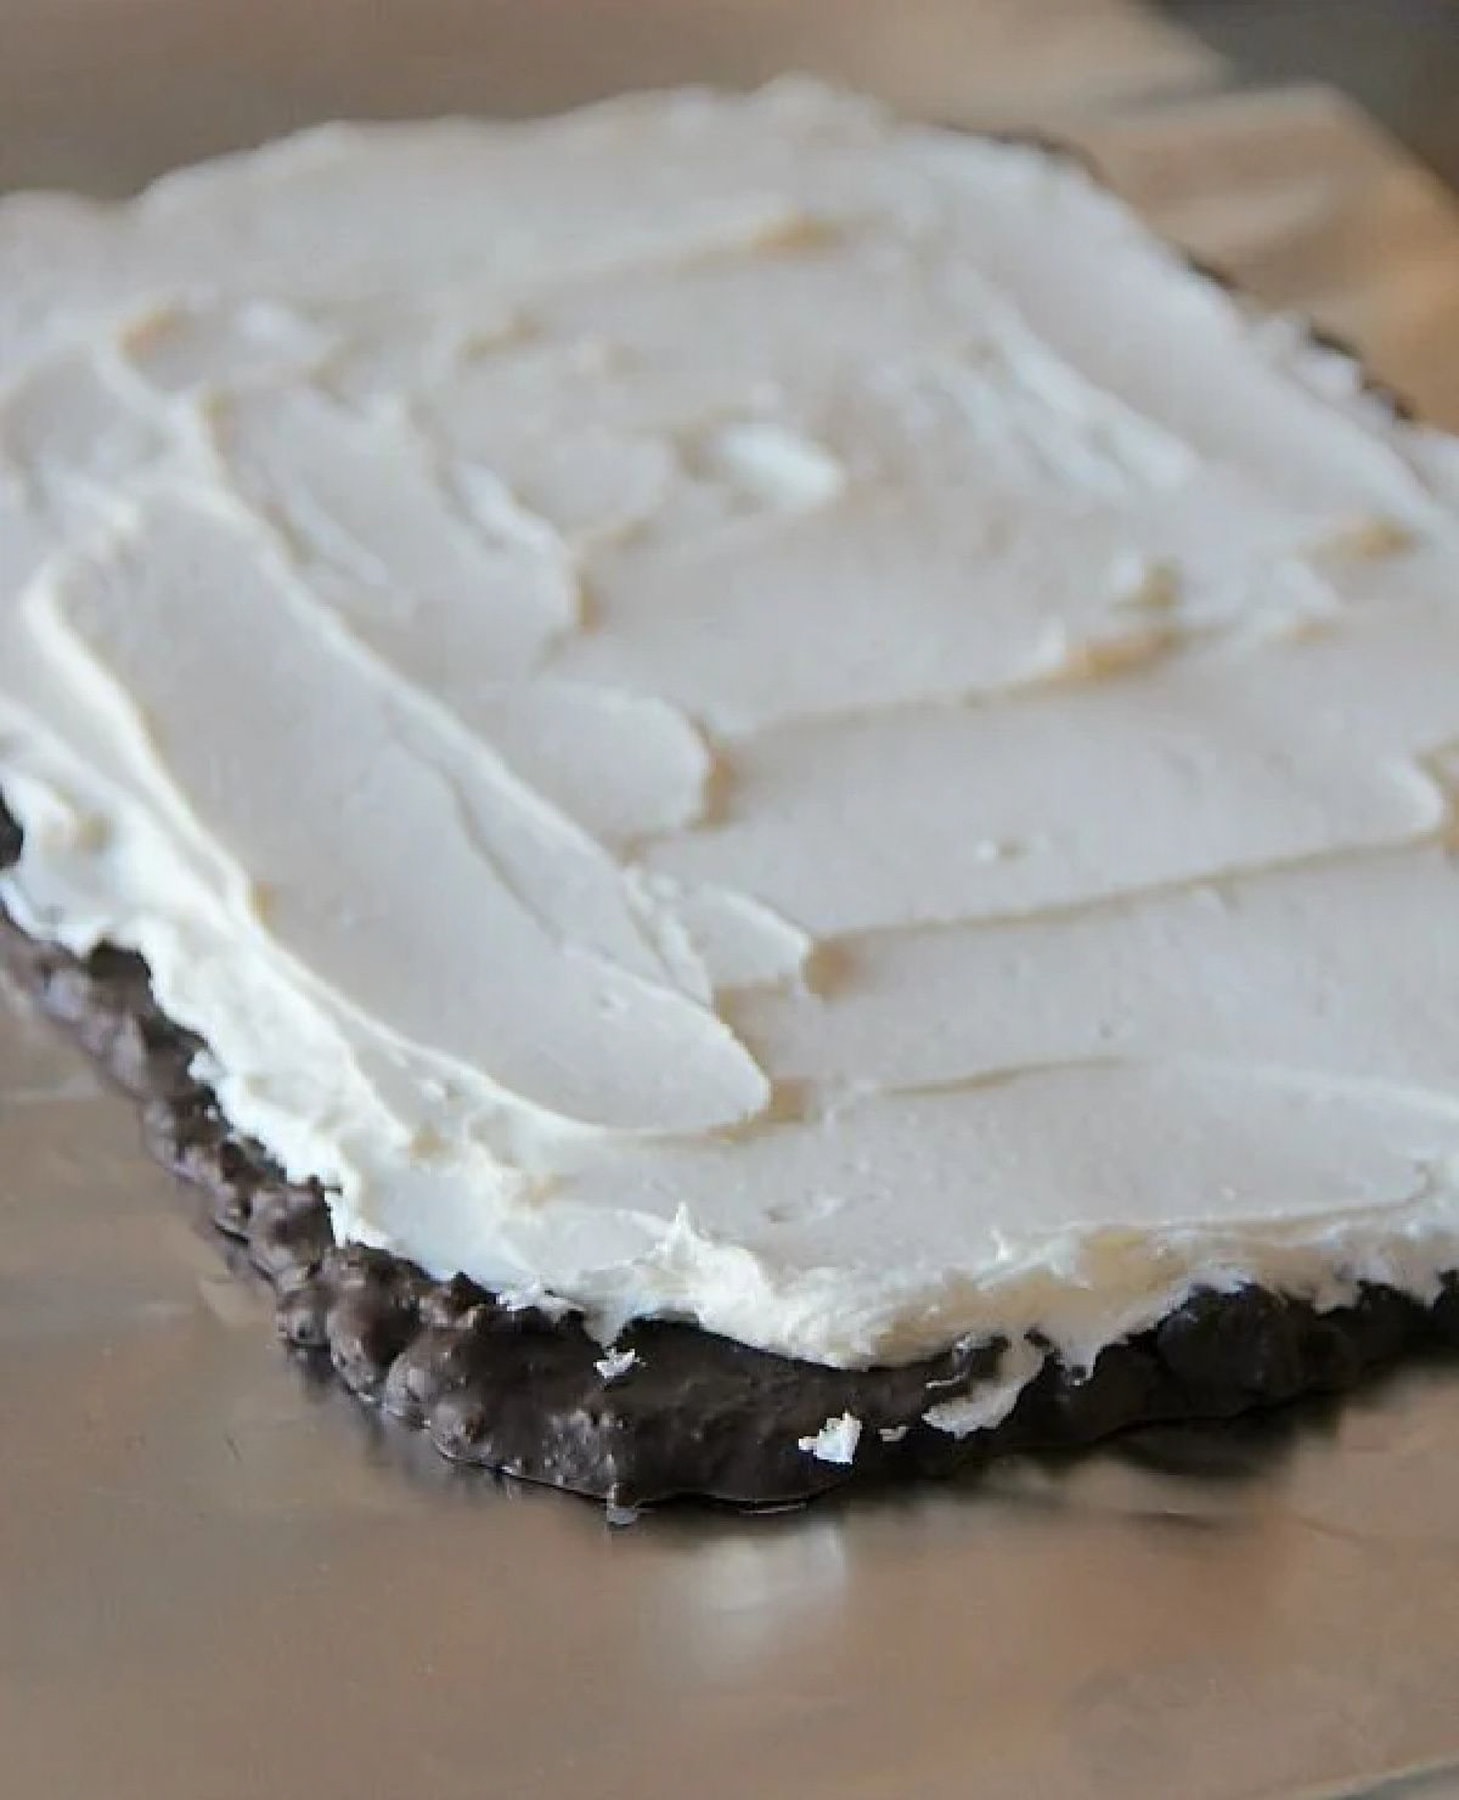 Homemade whipped cream spread on frozen bark